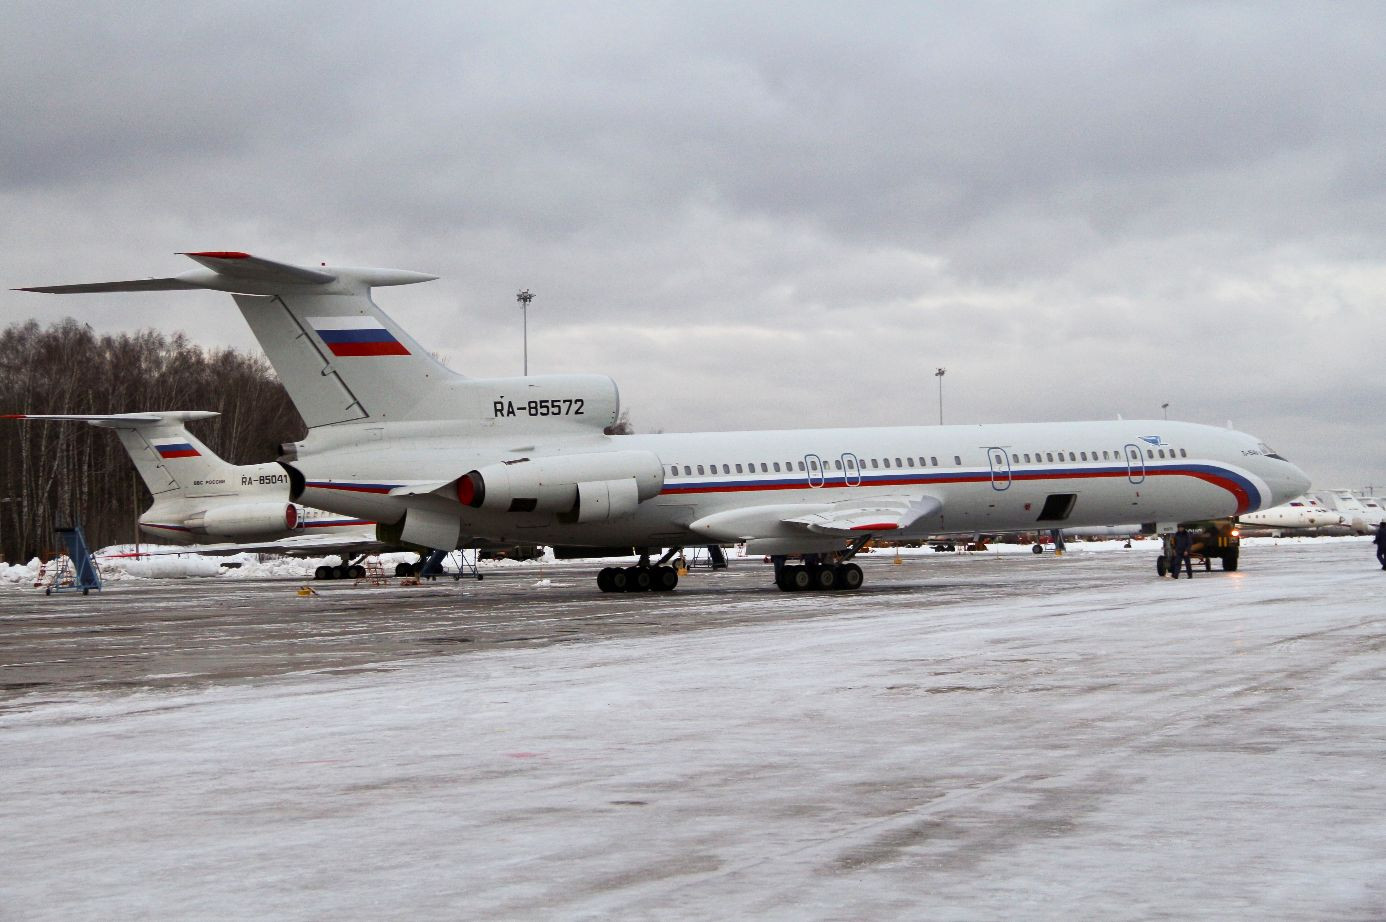 Lietadlo typu Tu-154 s registračným číslom RA-85572 